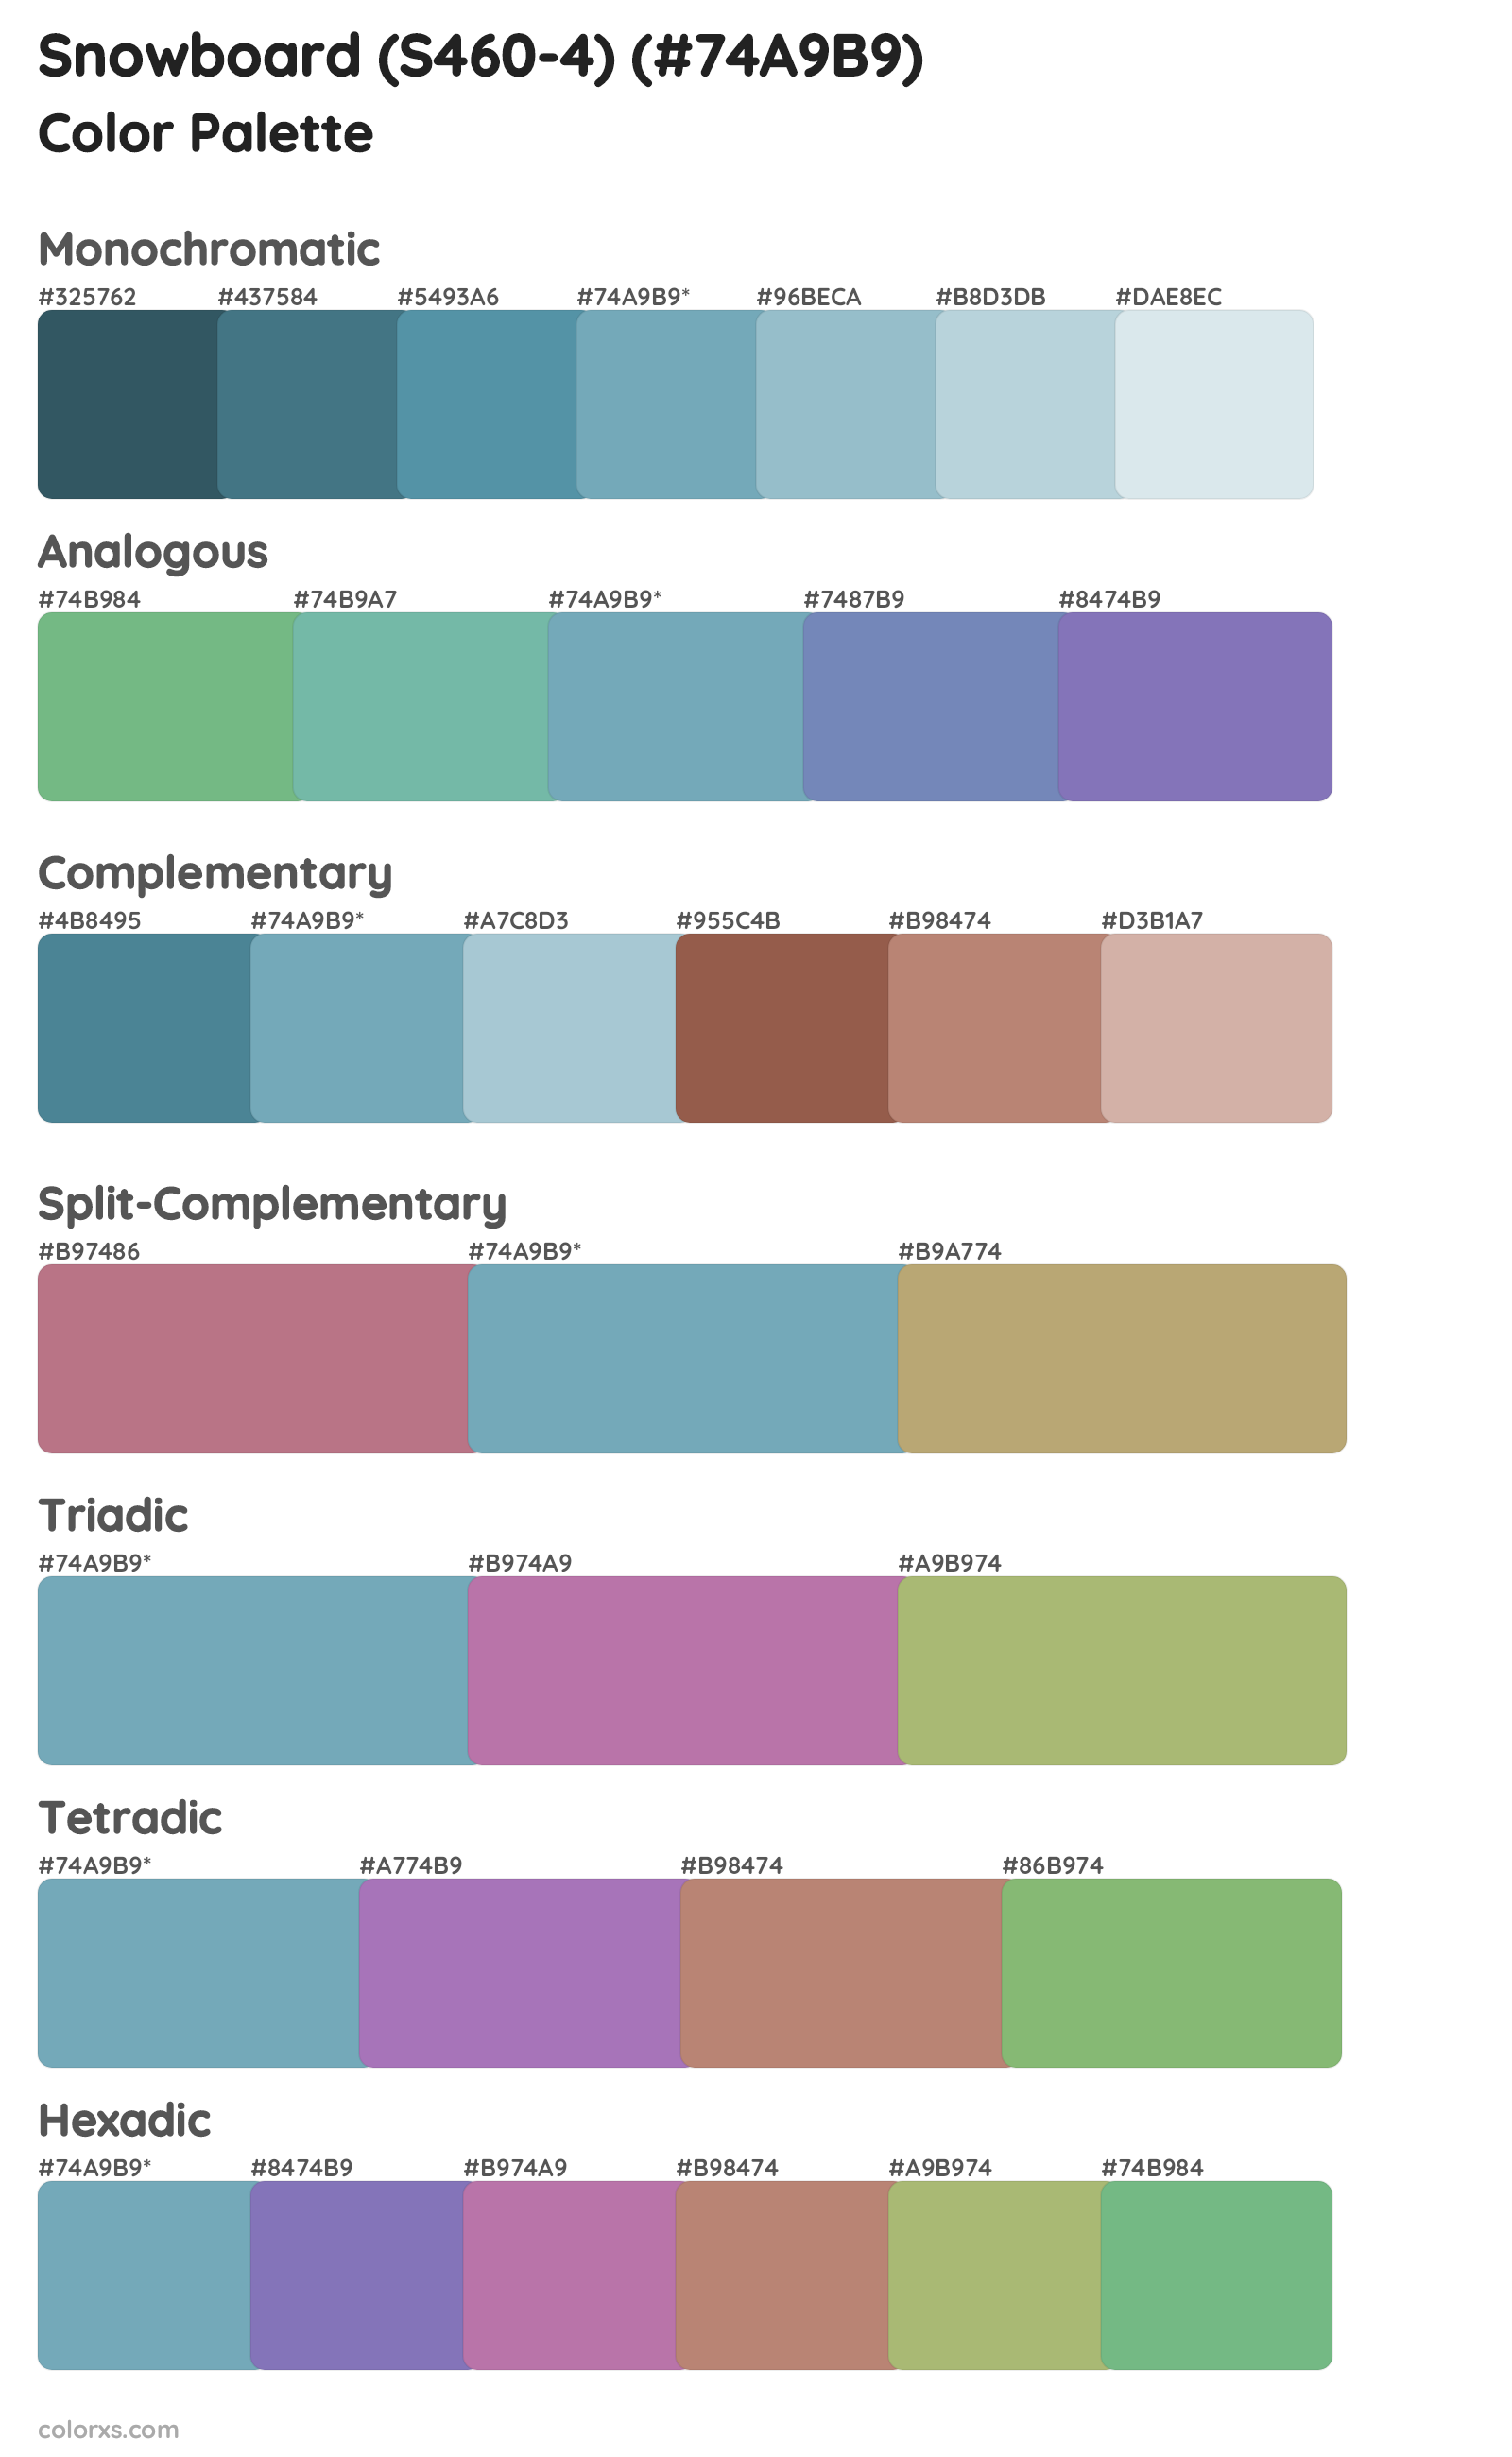 Snowboard (S460-4) Color Scheme Palettes